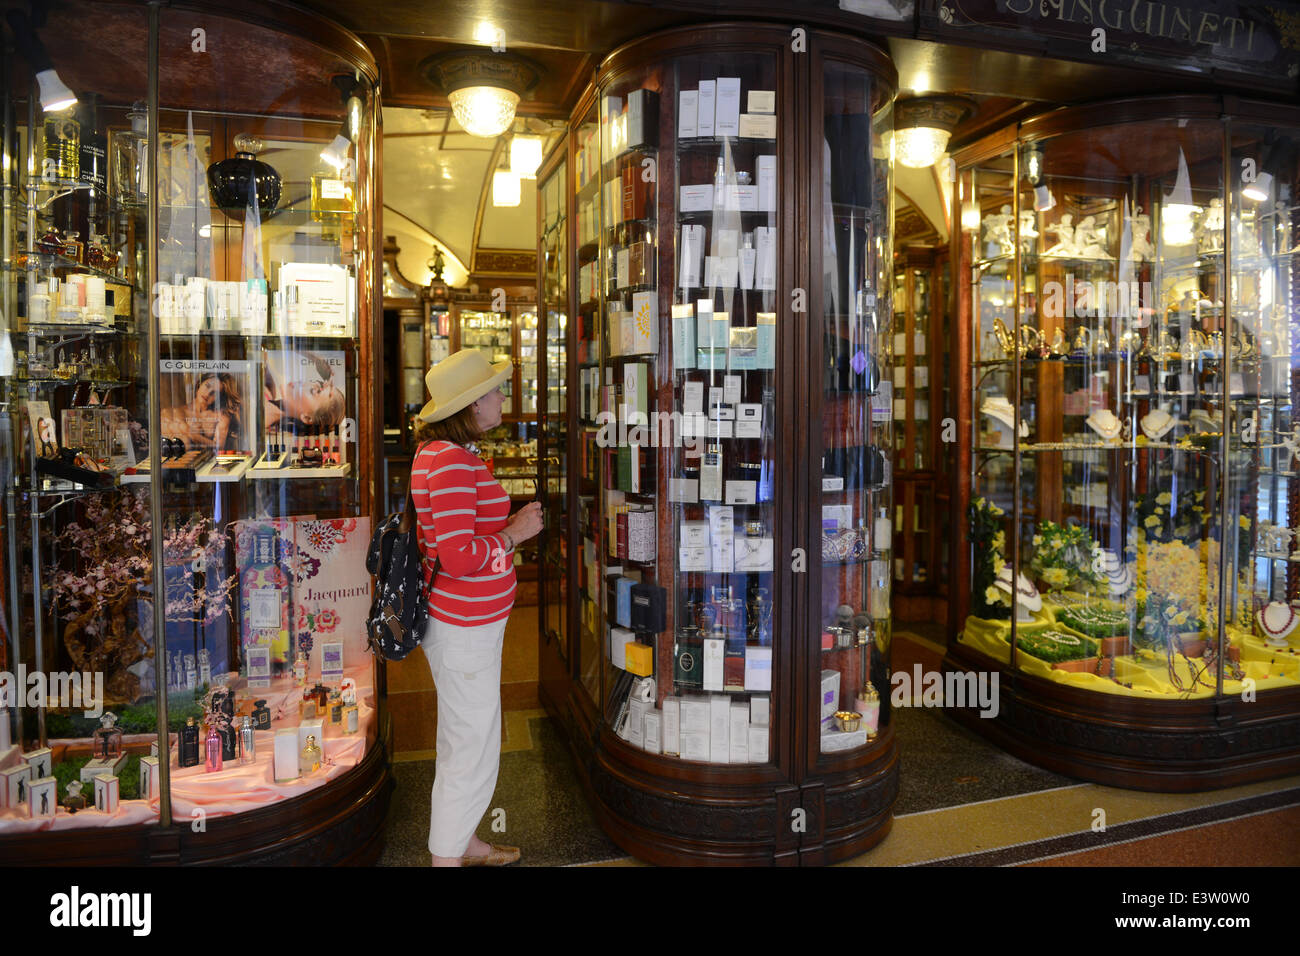 Chiavari Italie profumeria boutique parfum parfumerie fenêtre classique italien Banque D'Images